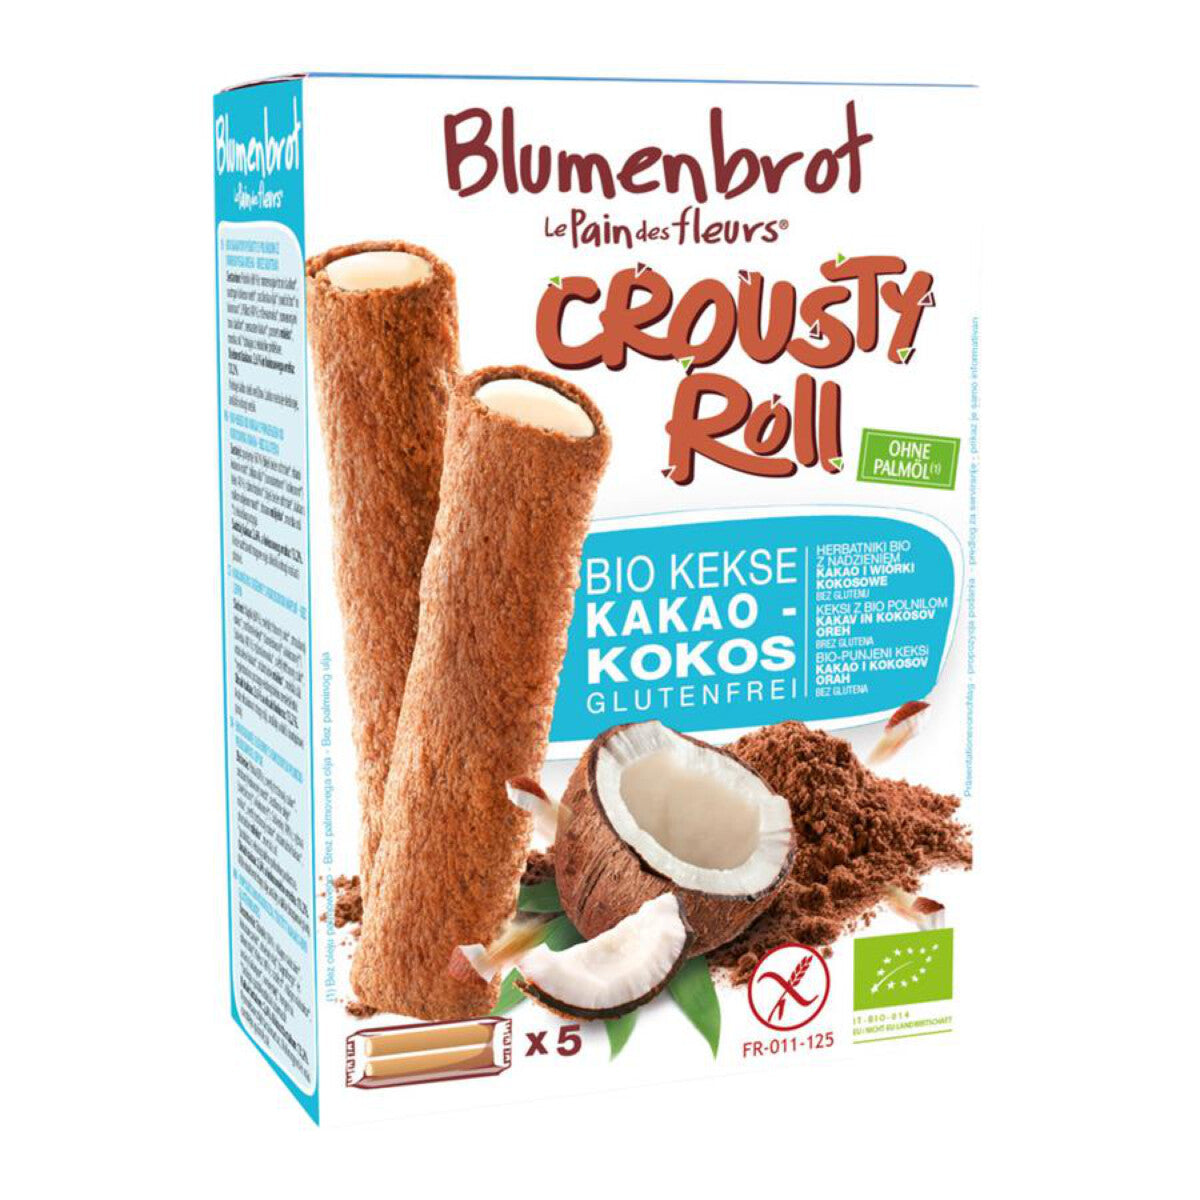 BLUMENBROT Crousty Rolls Kakao Kokos - 125 g